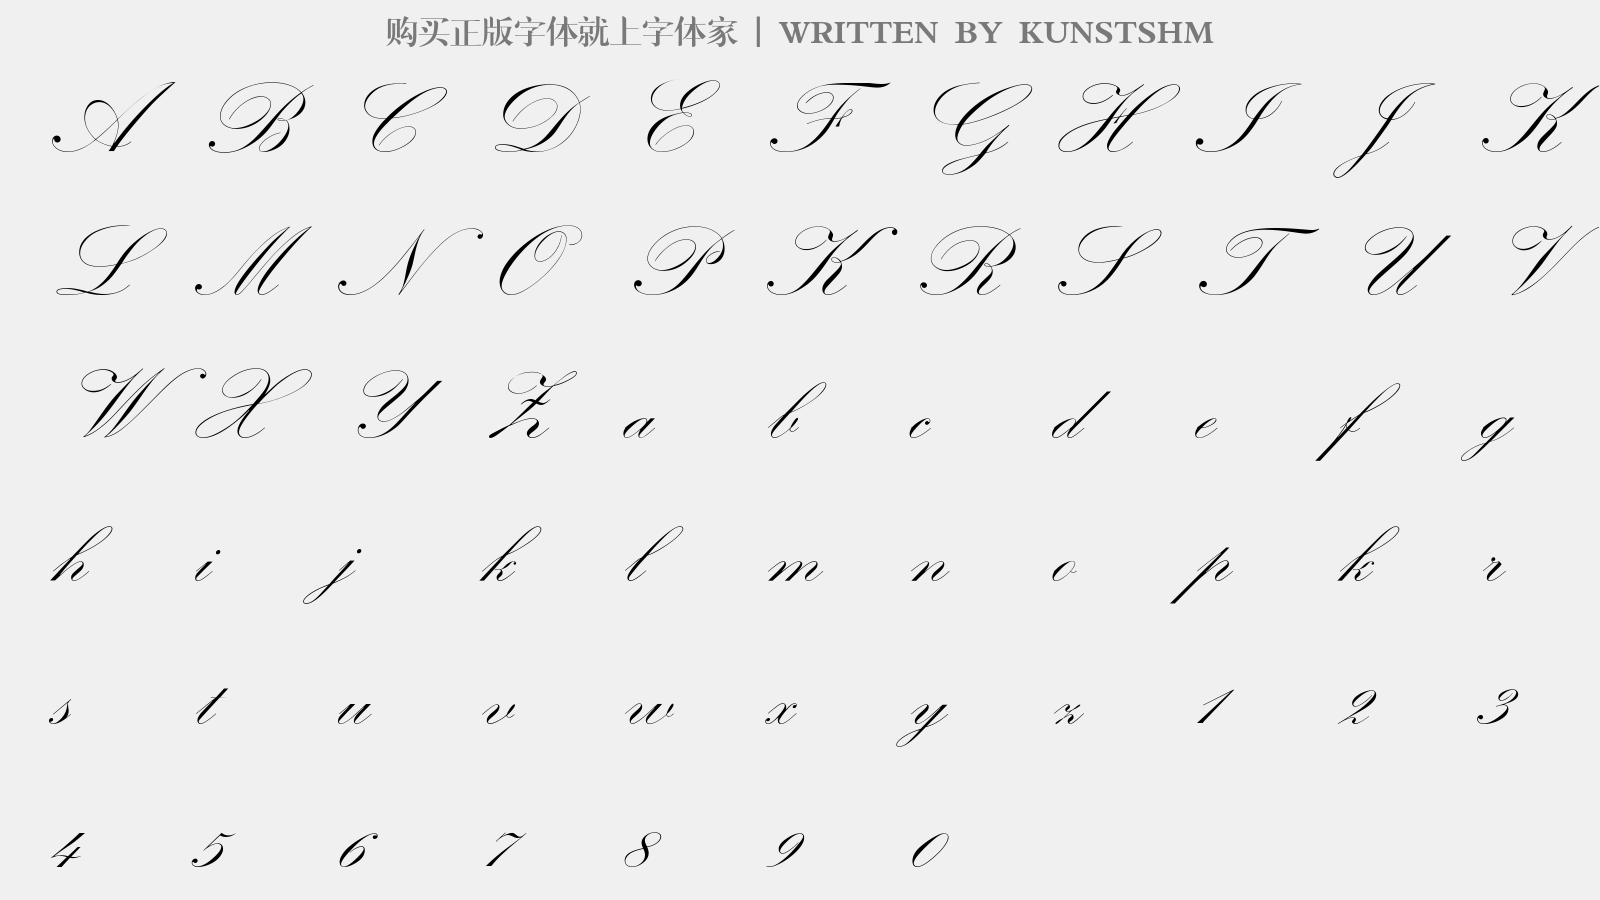 KUNSTSHM - 大写字母/小写字母/数字